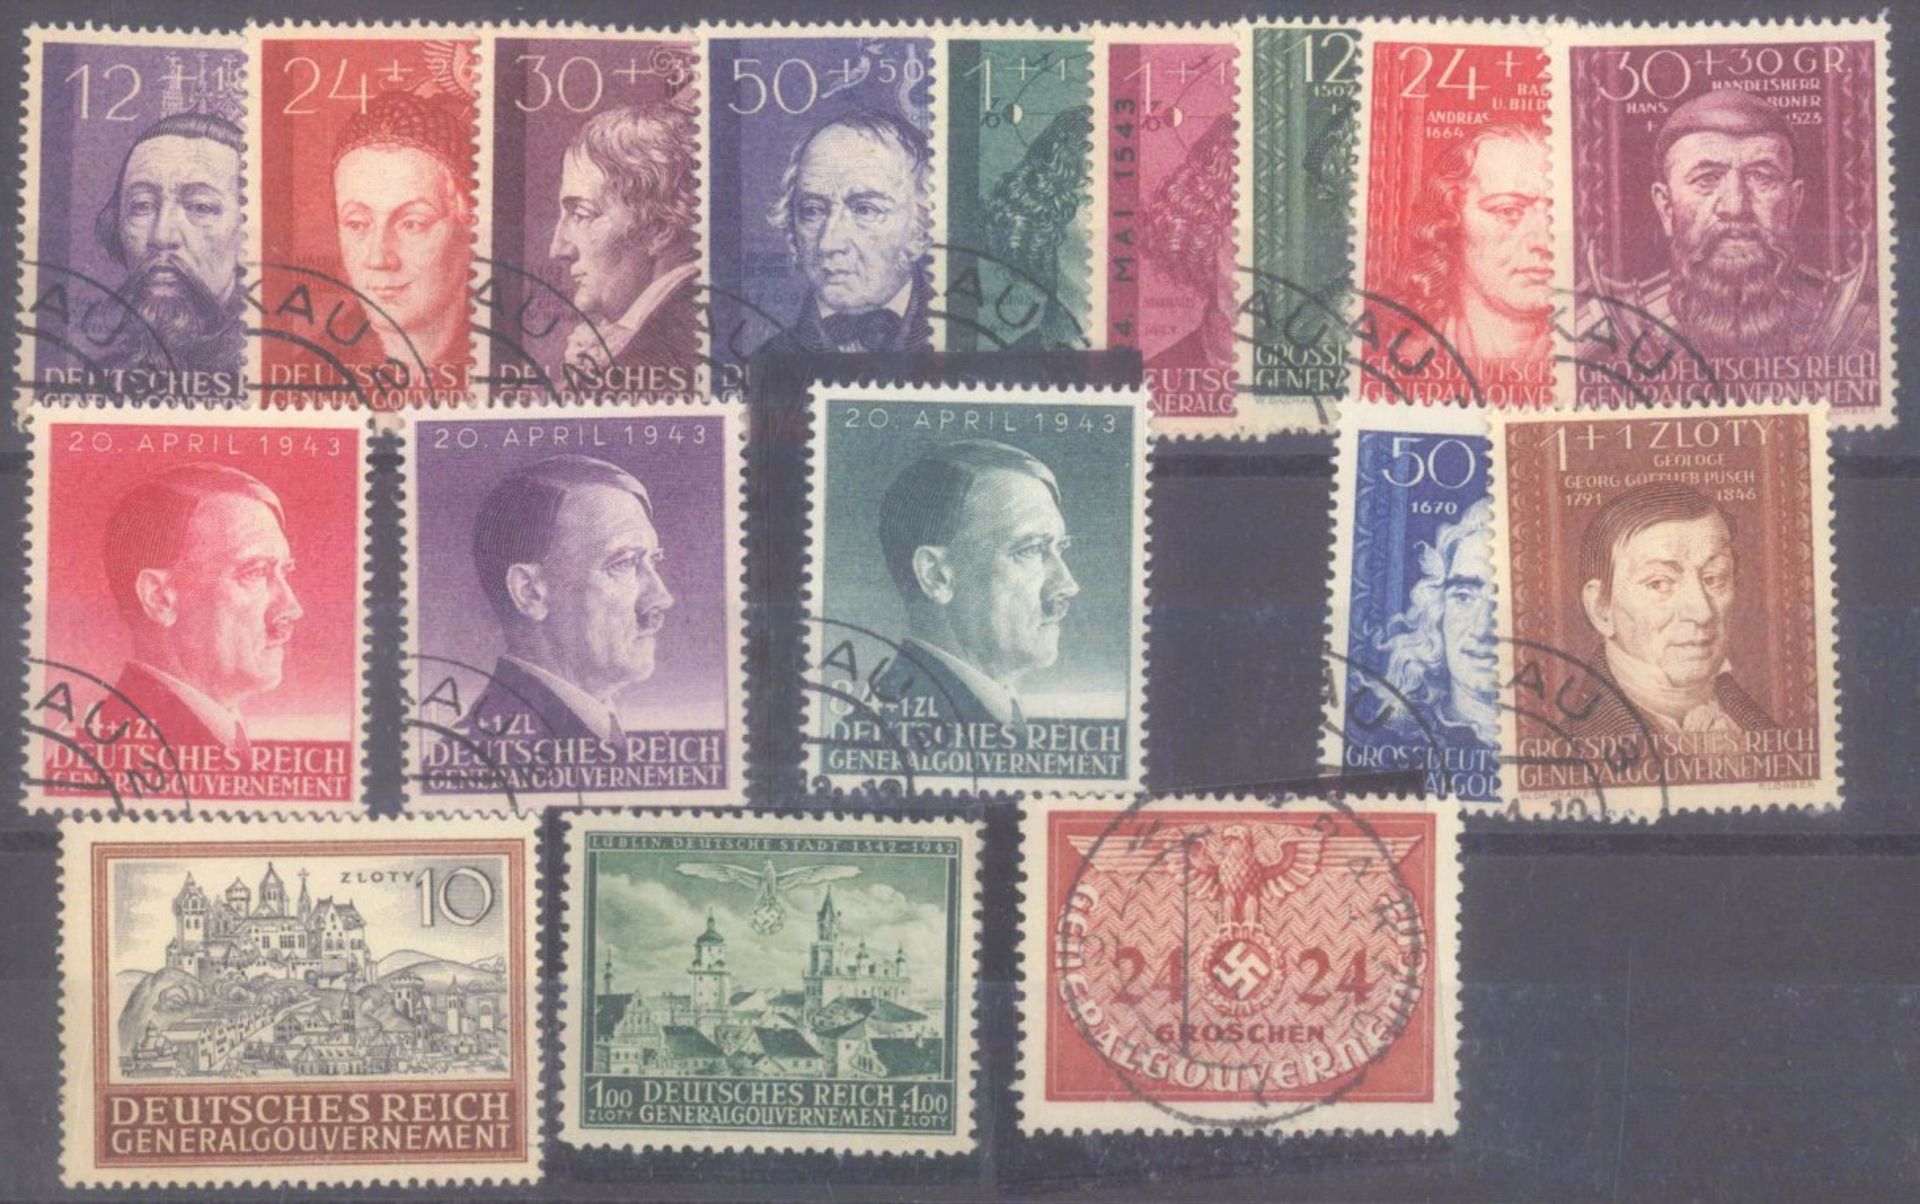 FRANKENTHALER NACHLASSuriger Nachlass mit Briefmarken und Belegen. Dabei DeutschesReich, altes - Bild 40 aus 46